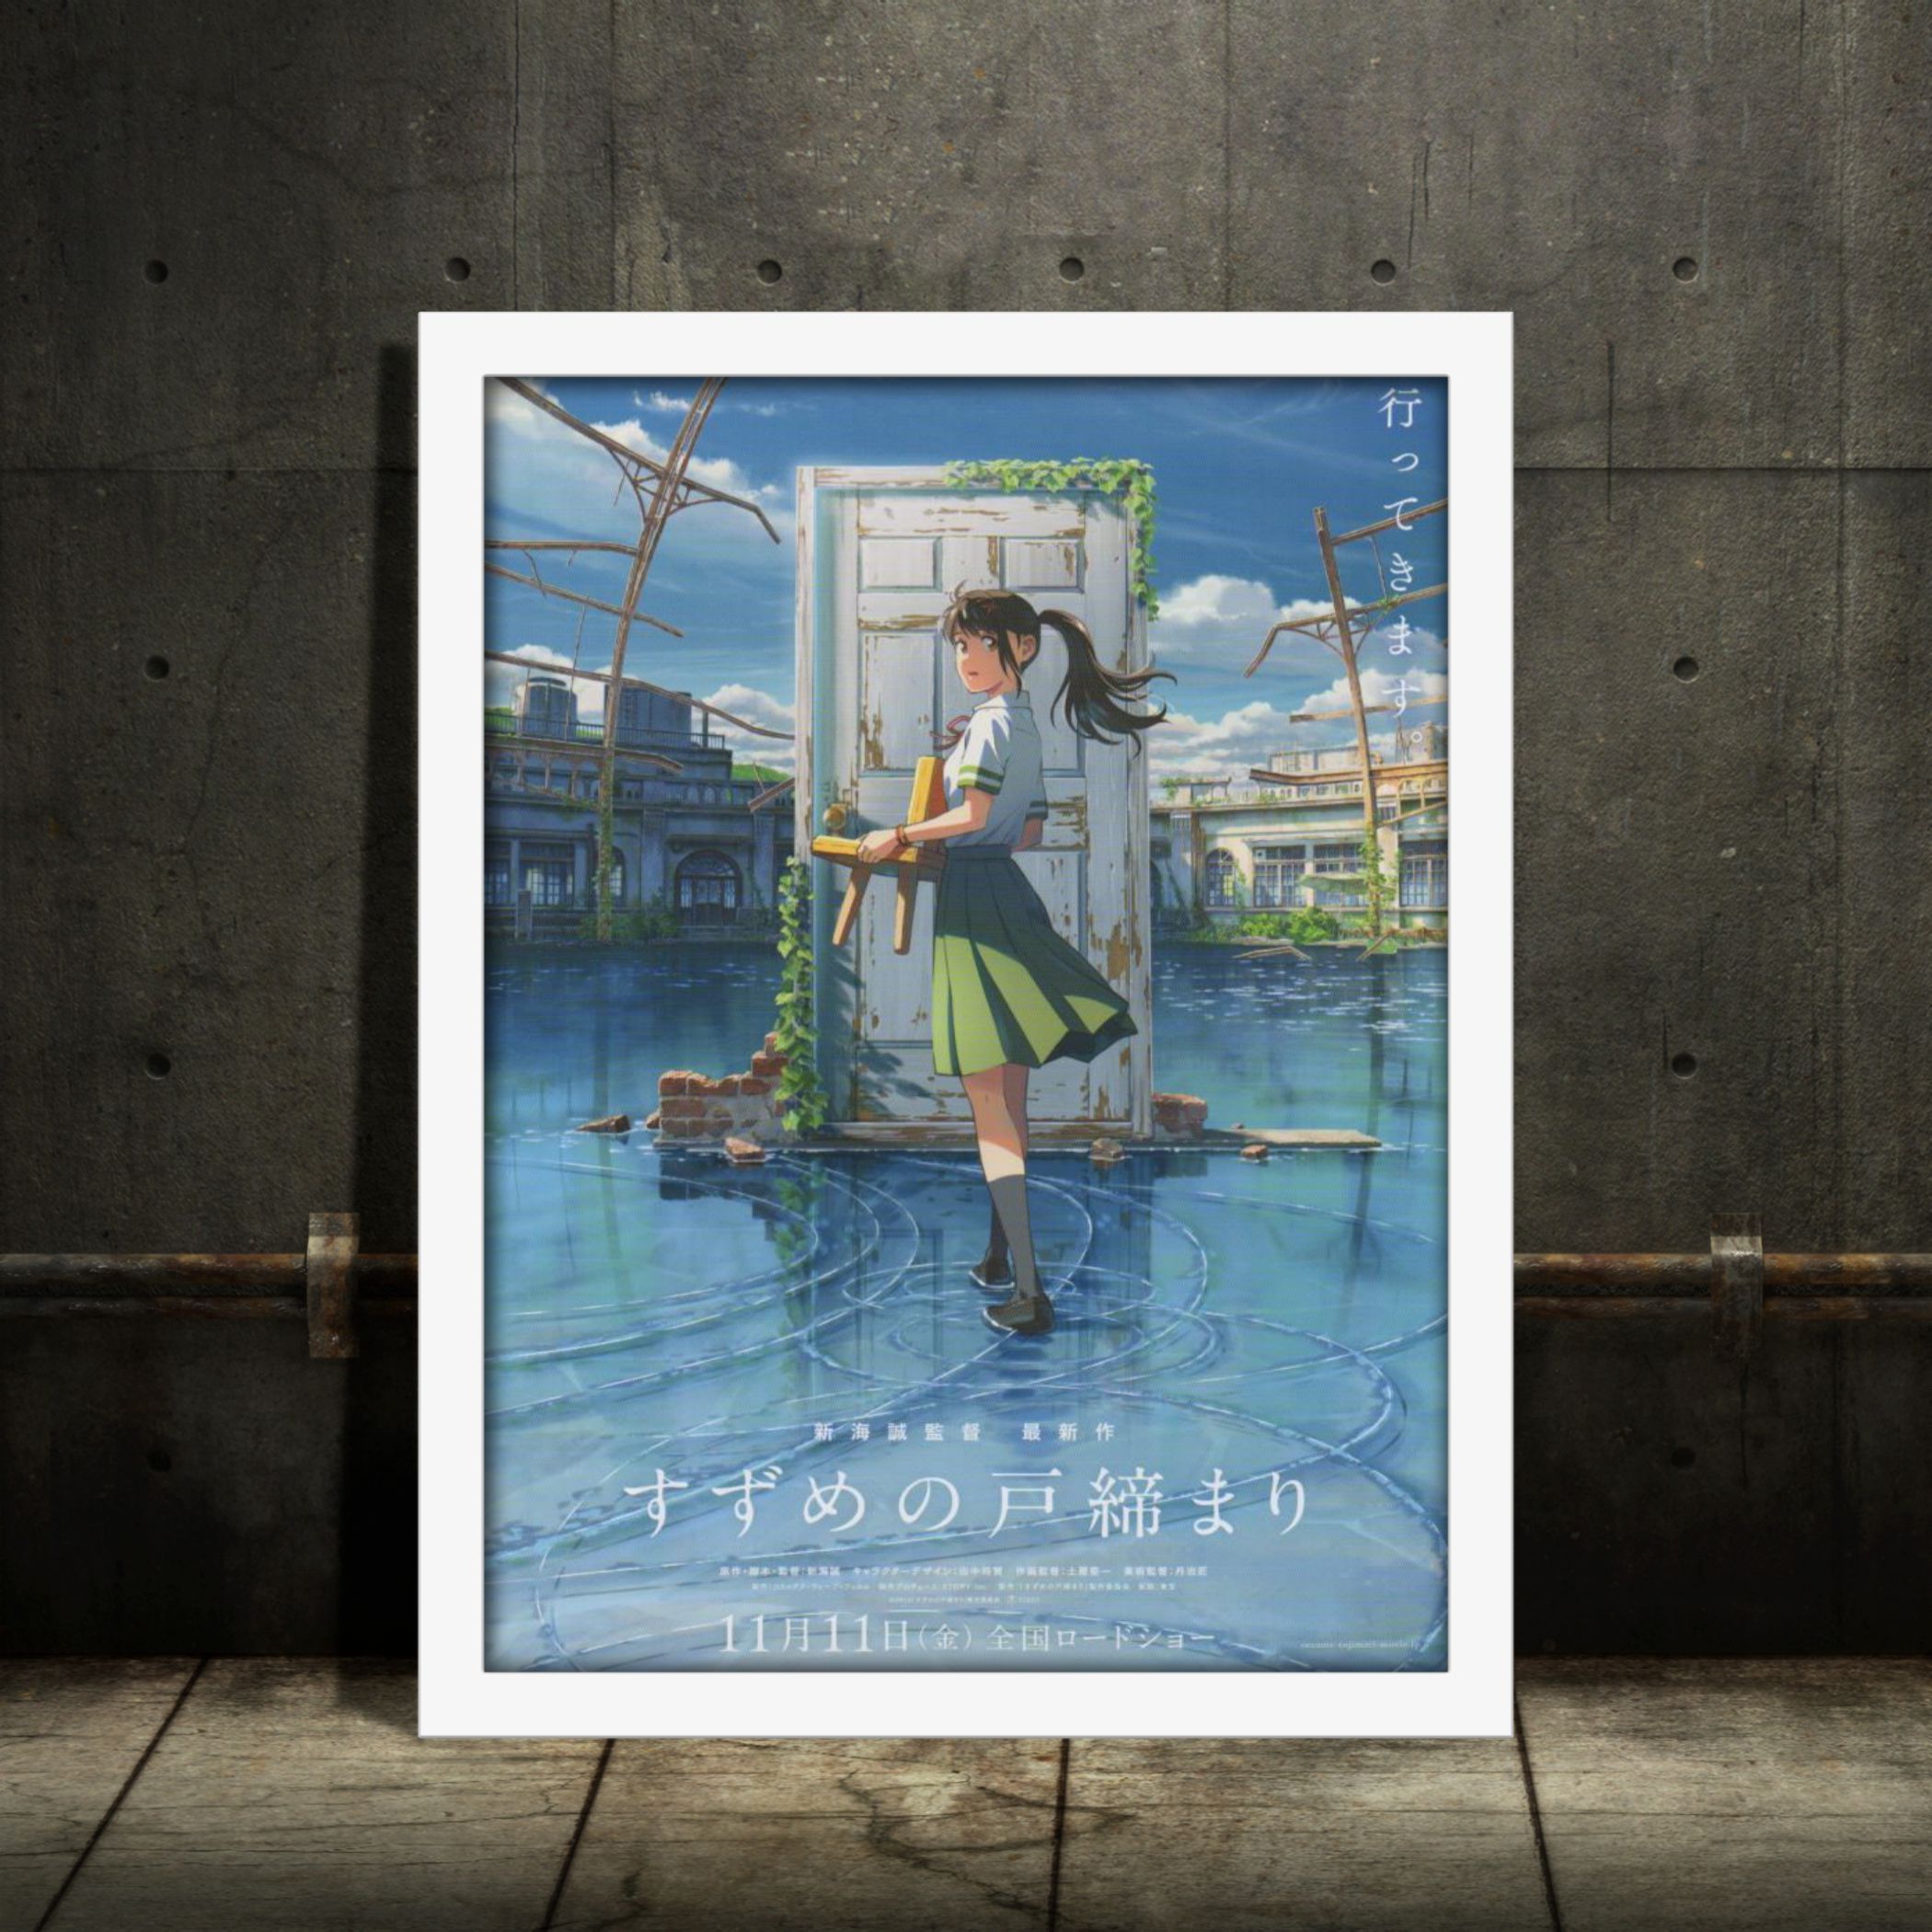 Suzume no Tojimari (すずめの戸締まり) Anime Movie Poster